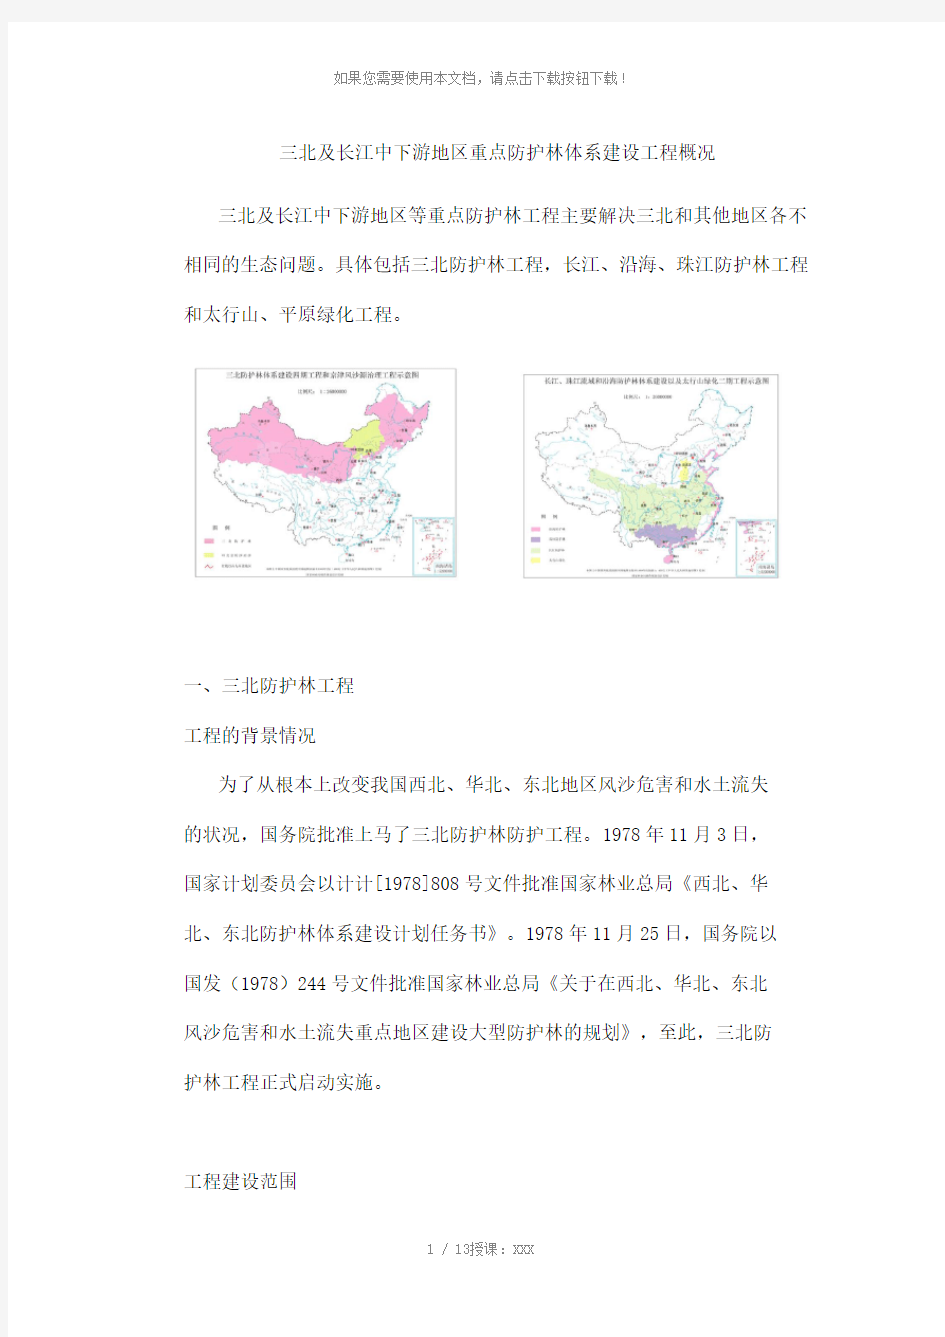 三北及长江中下游地区重点防护林体系建设工程概况